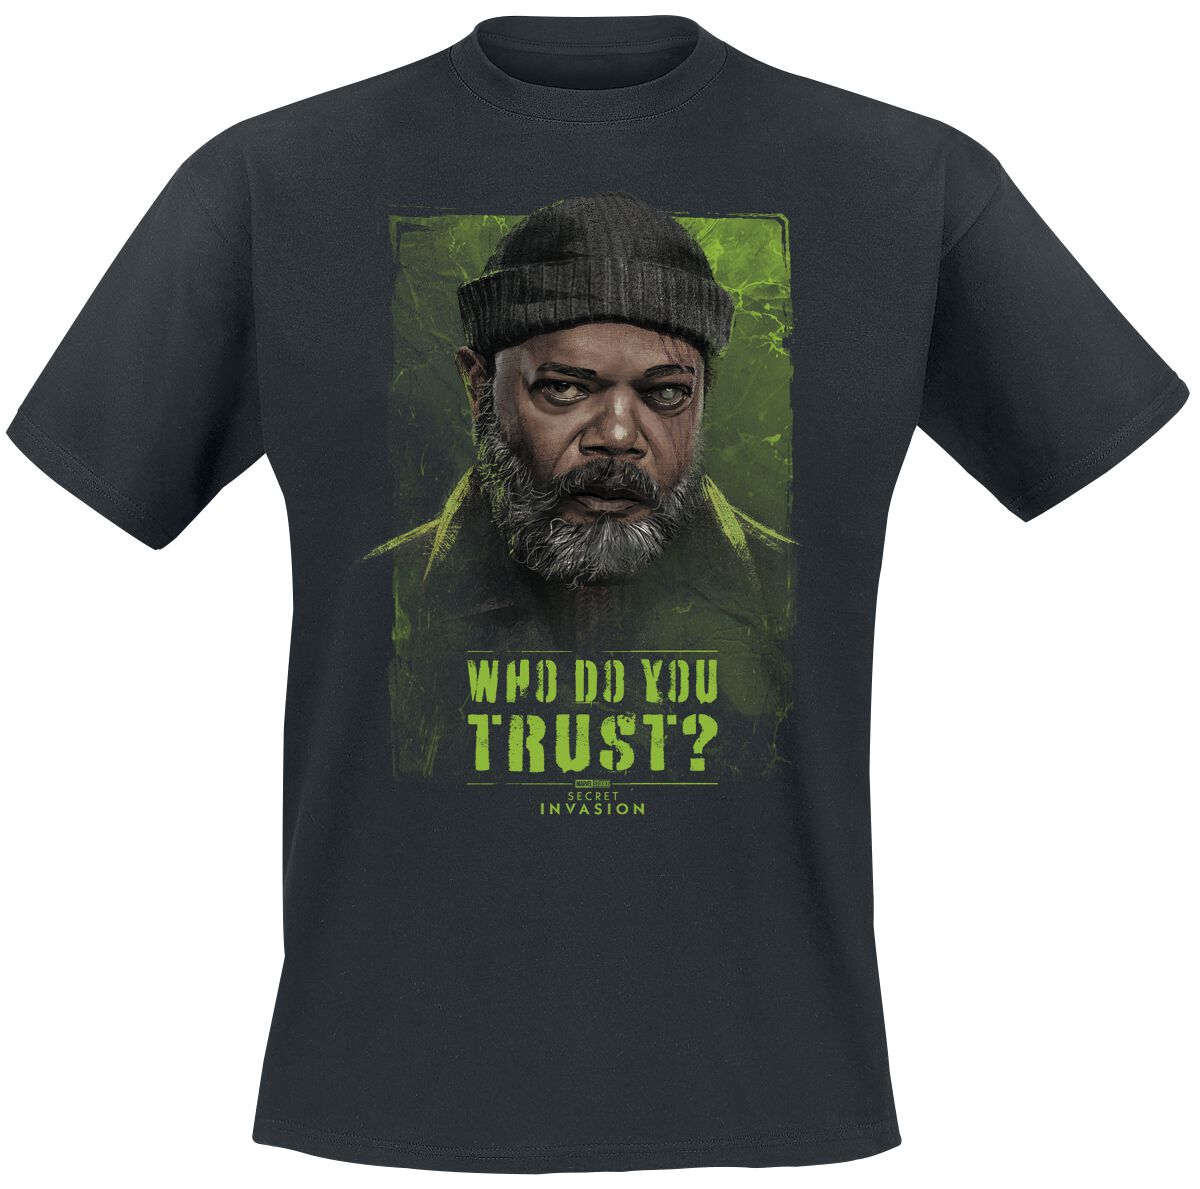 Secret Invasion - Marvel T-Shirt - Who Do You Trust? Nick Fury - S bis XXL - für Männer - Größe XXL - schwarz  - EMP exklusives Merchandise!